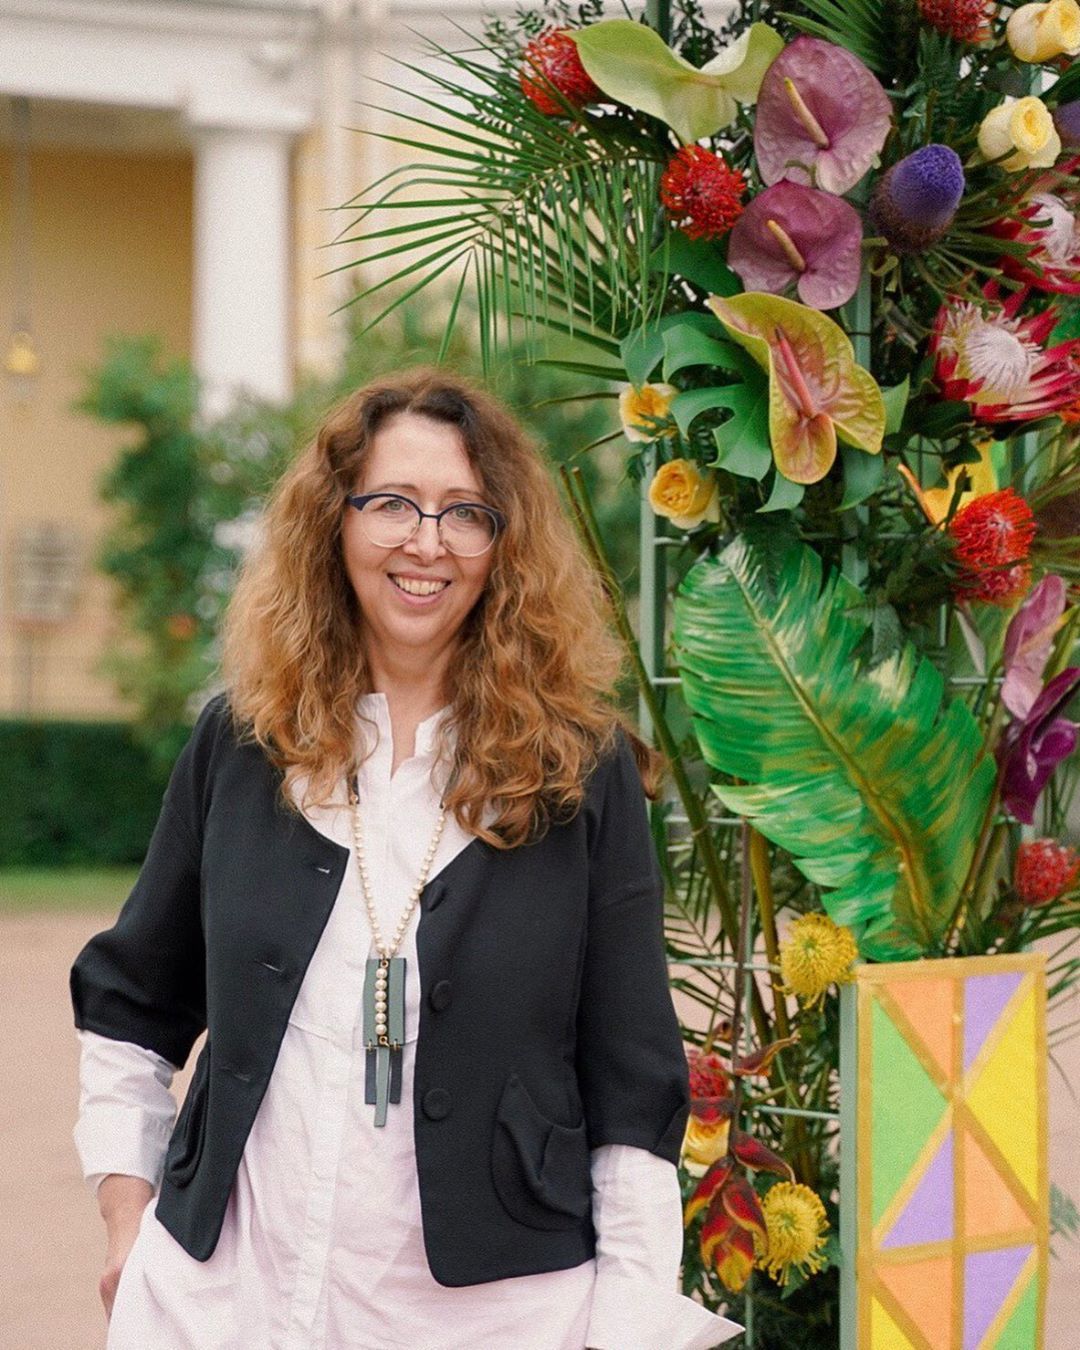 Мила Шуманн, мастер-флорист, преподаватель, судья международной организации Florint